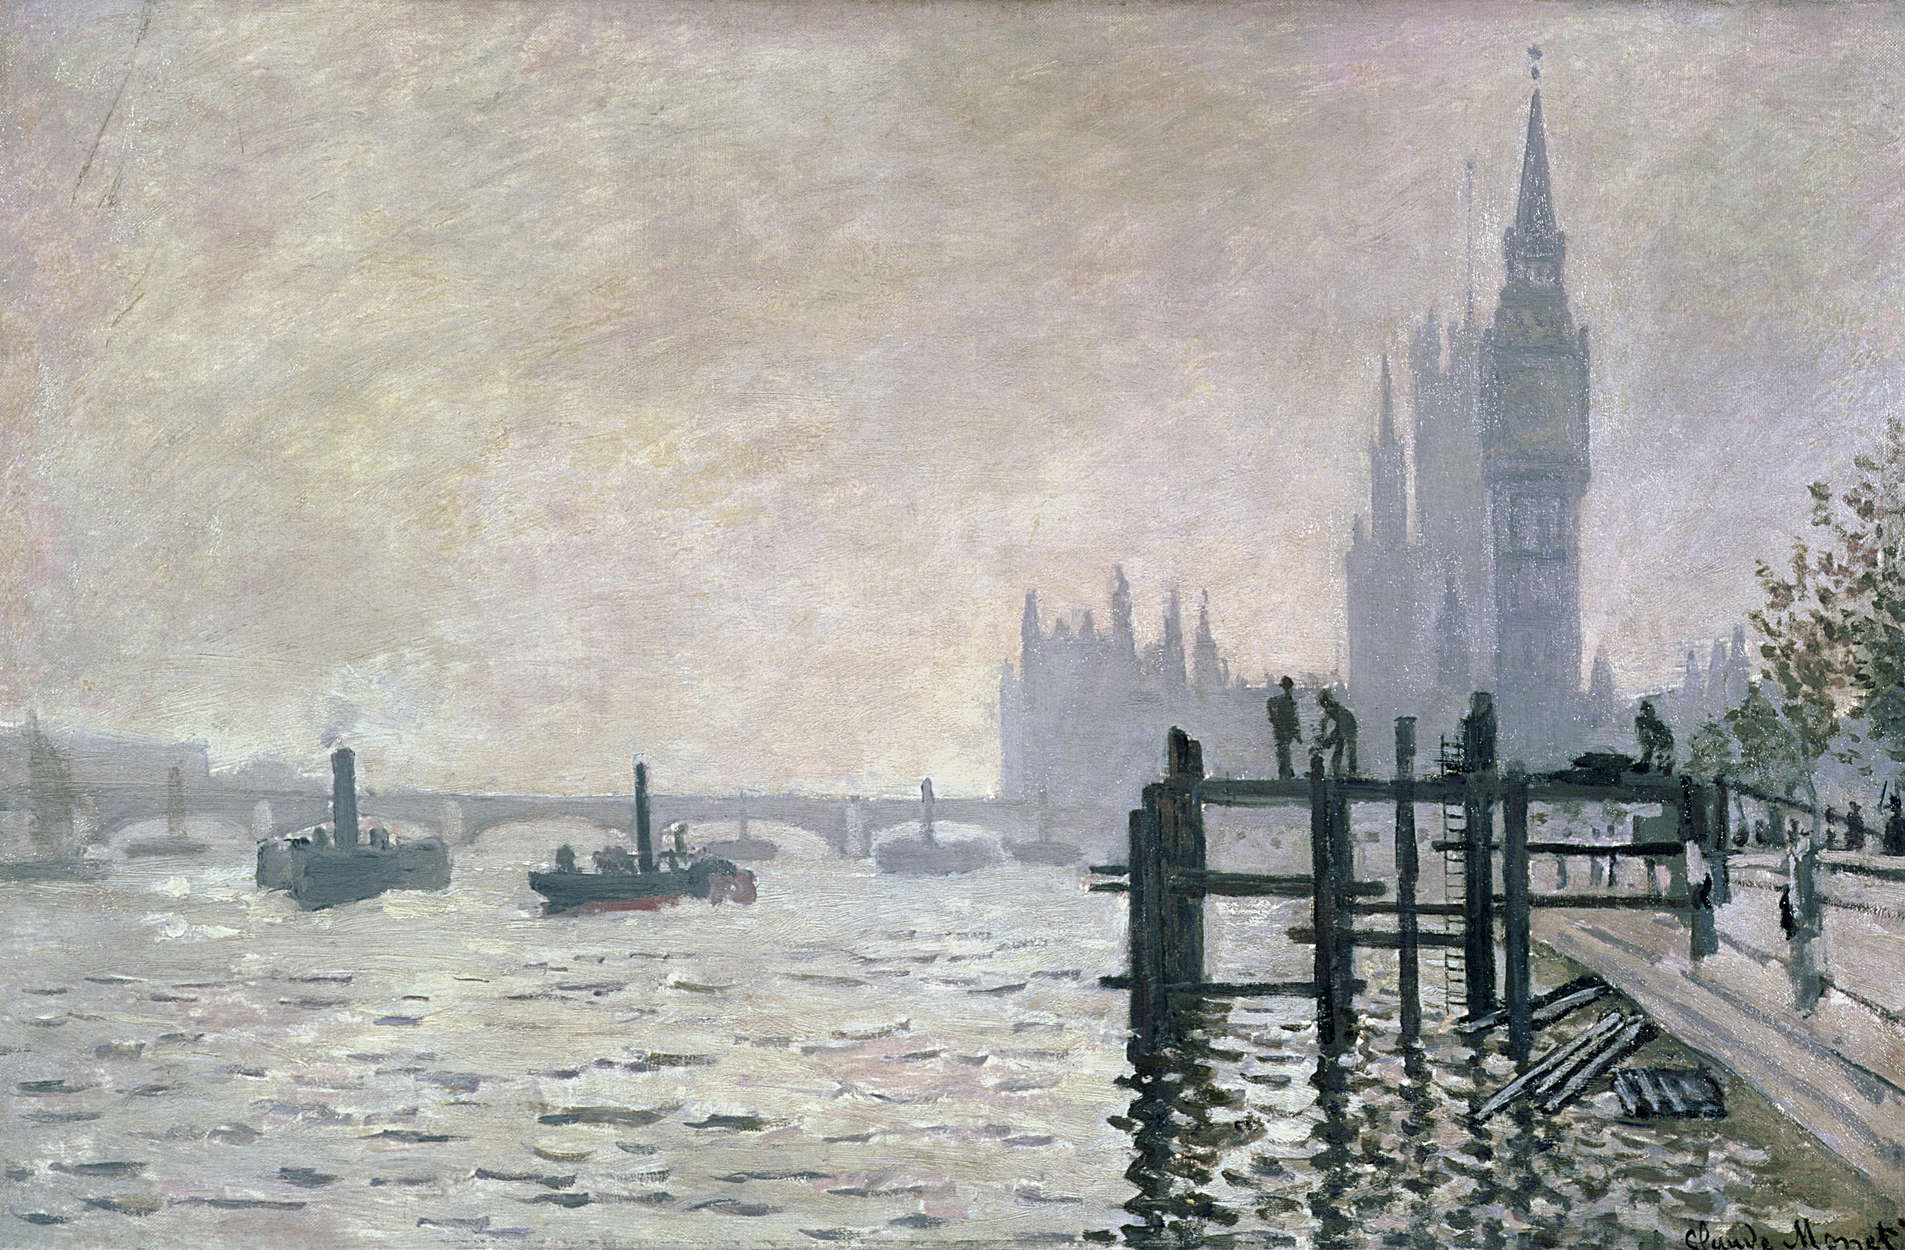             Papier peint panoramique "La Tamise en aval de Westminster" de Claude Monet
        